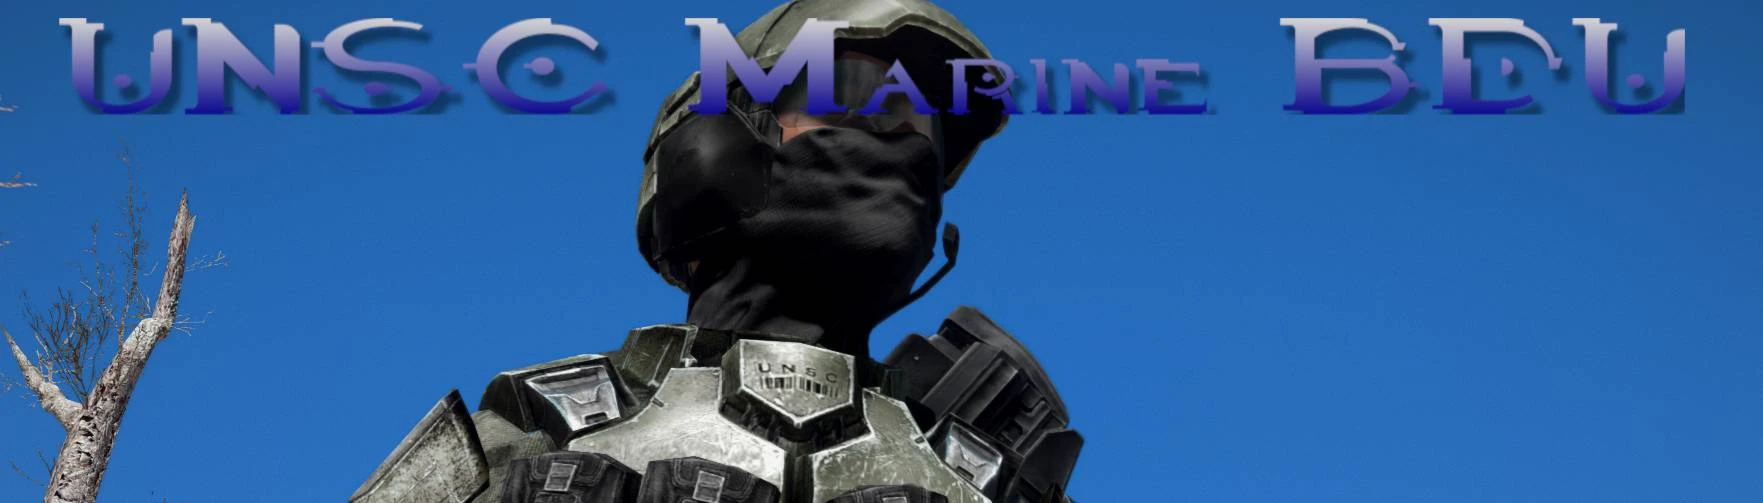 halo 4 marine variants